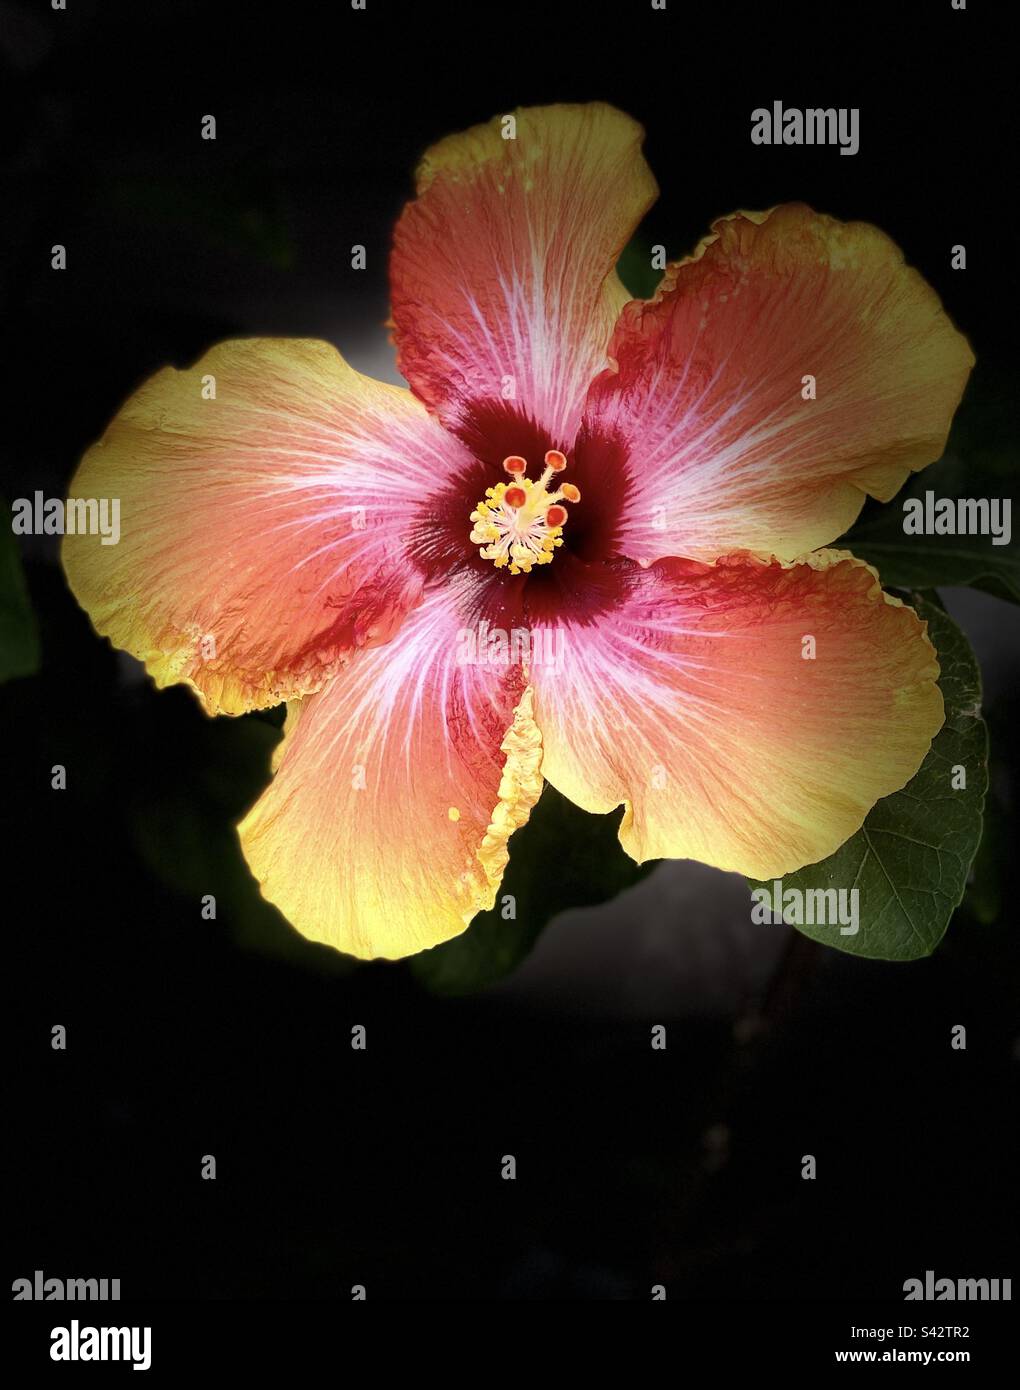 Chinese hibiscus glowing. Stock Photo